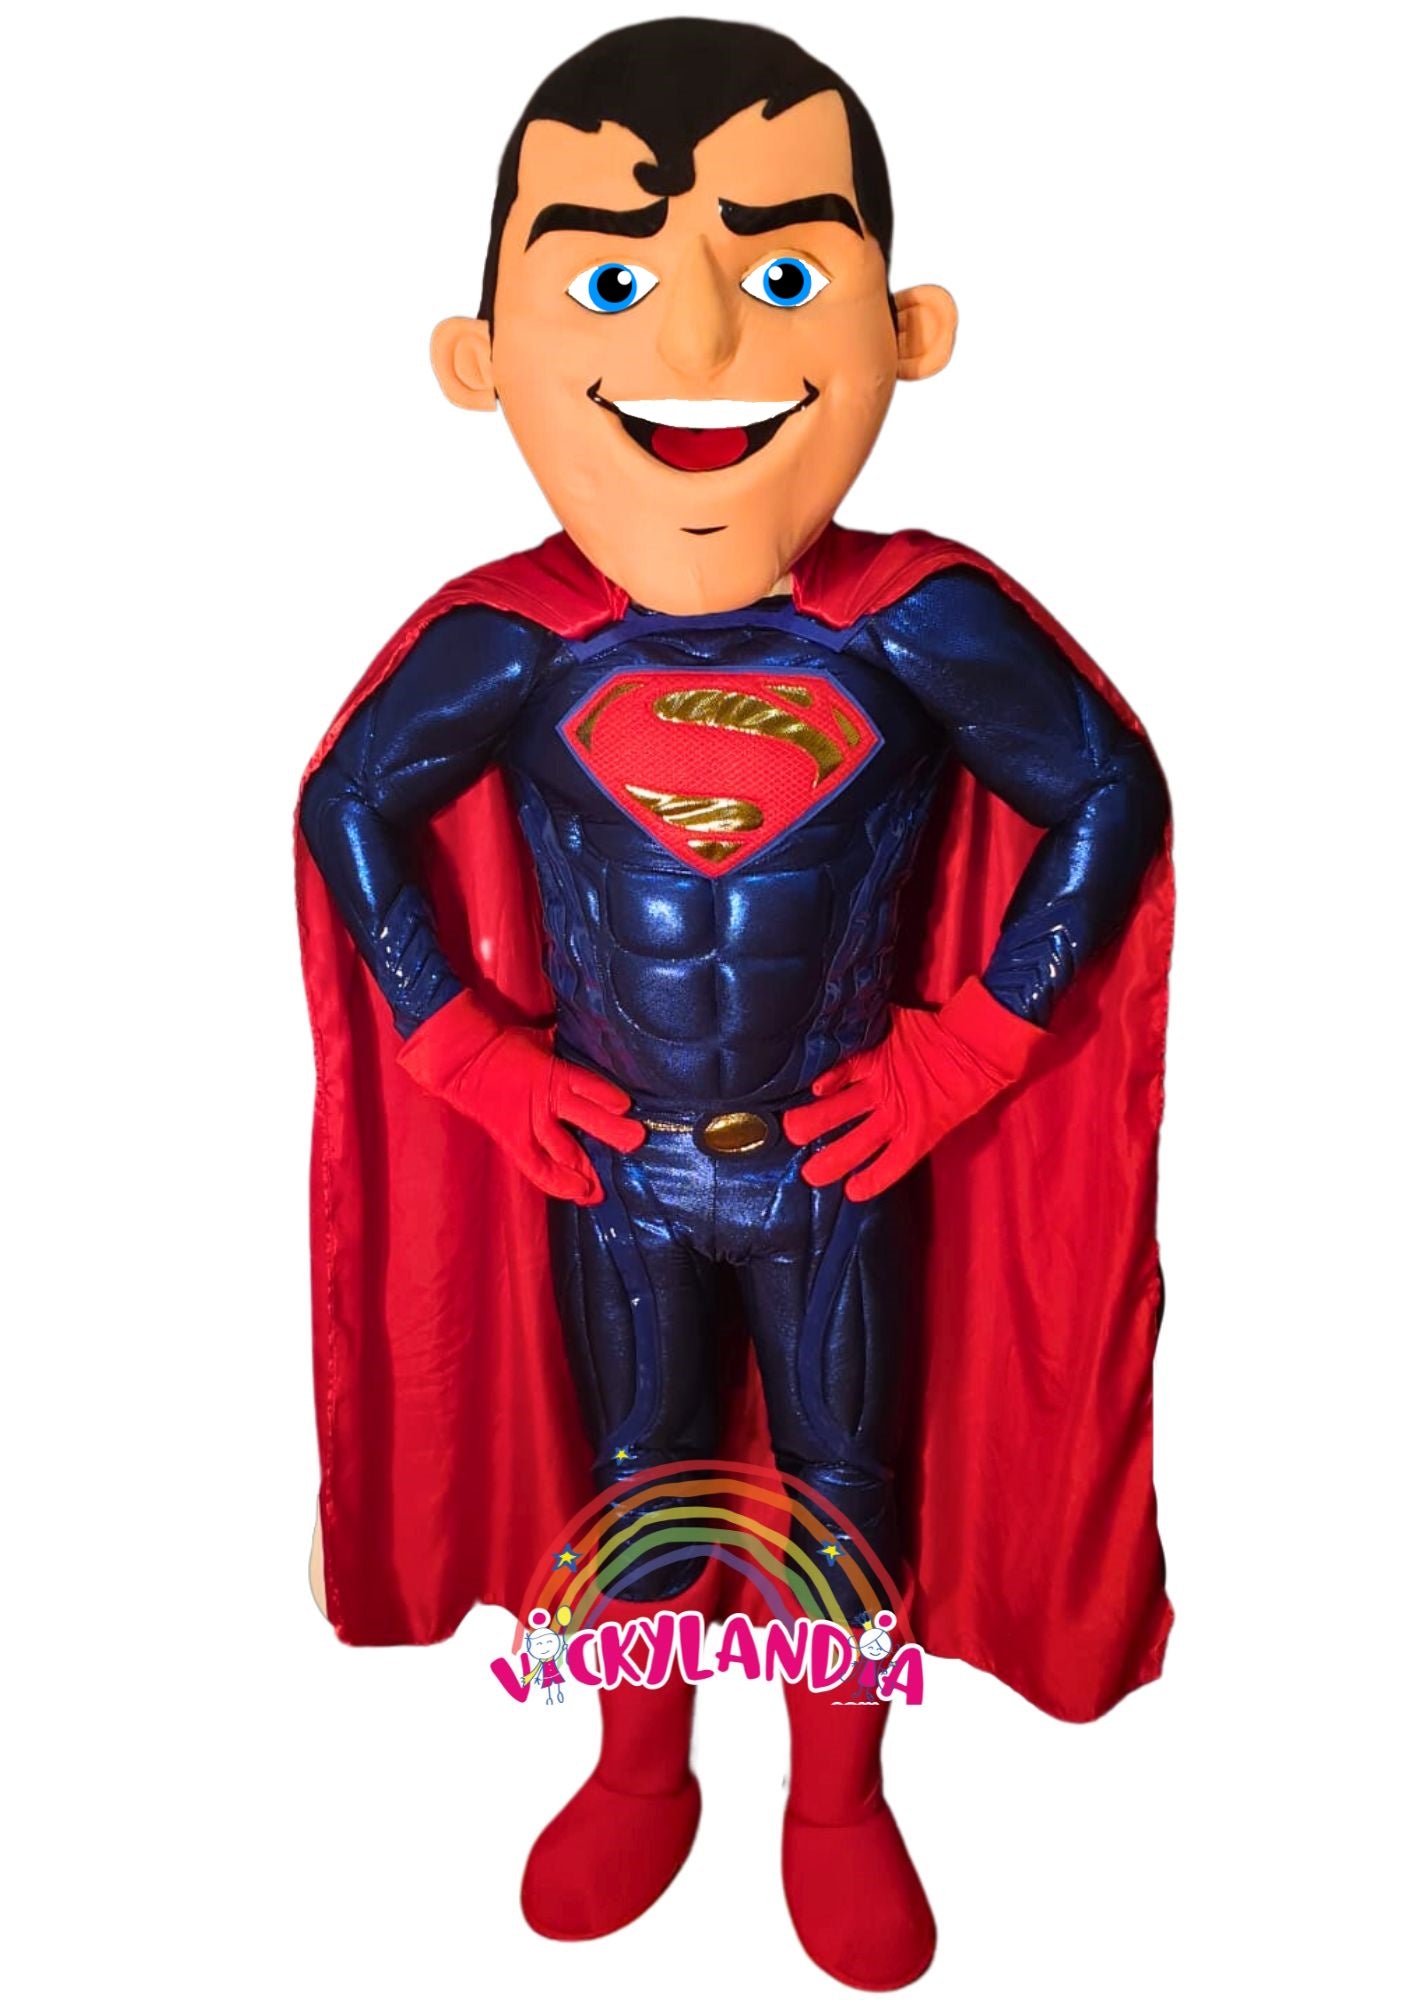 Descubre la magia de nuestro muñeco publicitario de Super Hombre en Vickylandia. Son disfraces cabezones perfectos para fiestas infantiles, shows, cumpleaños, estrategias publicitarias, carnavales, fiestas patronales, espectáculos, cabalgatas y cualquier tipo de evento